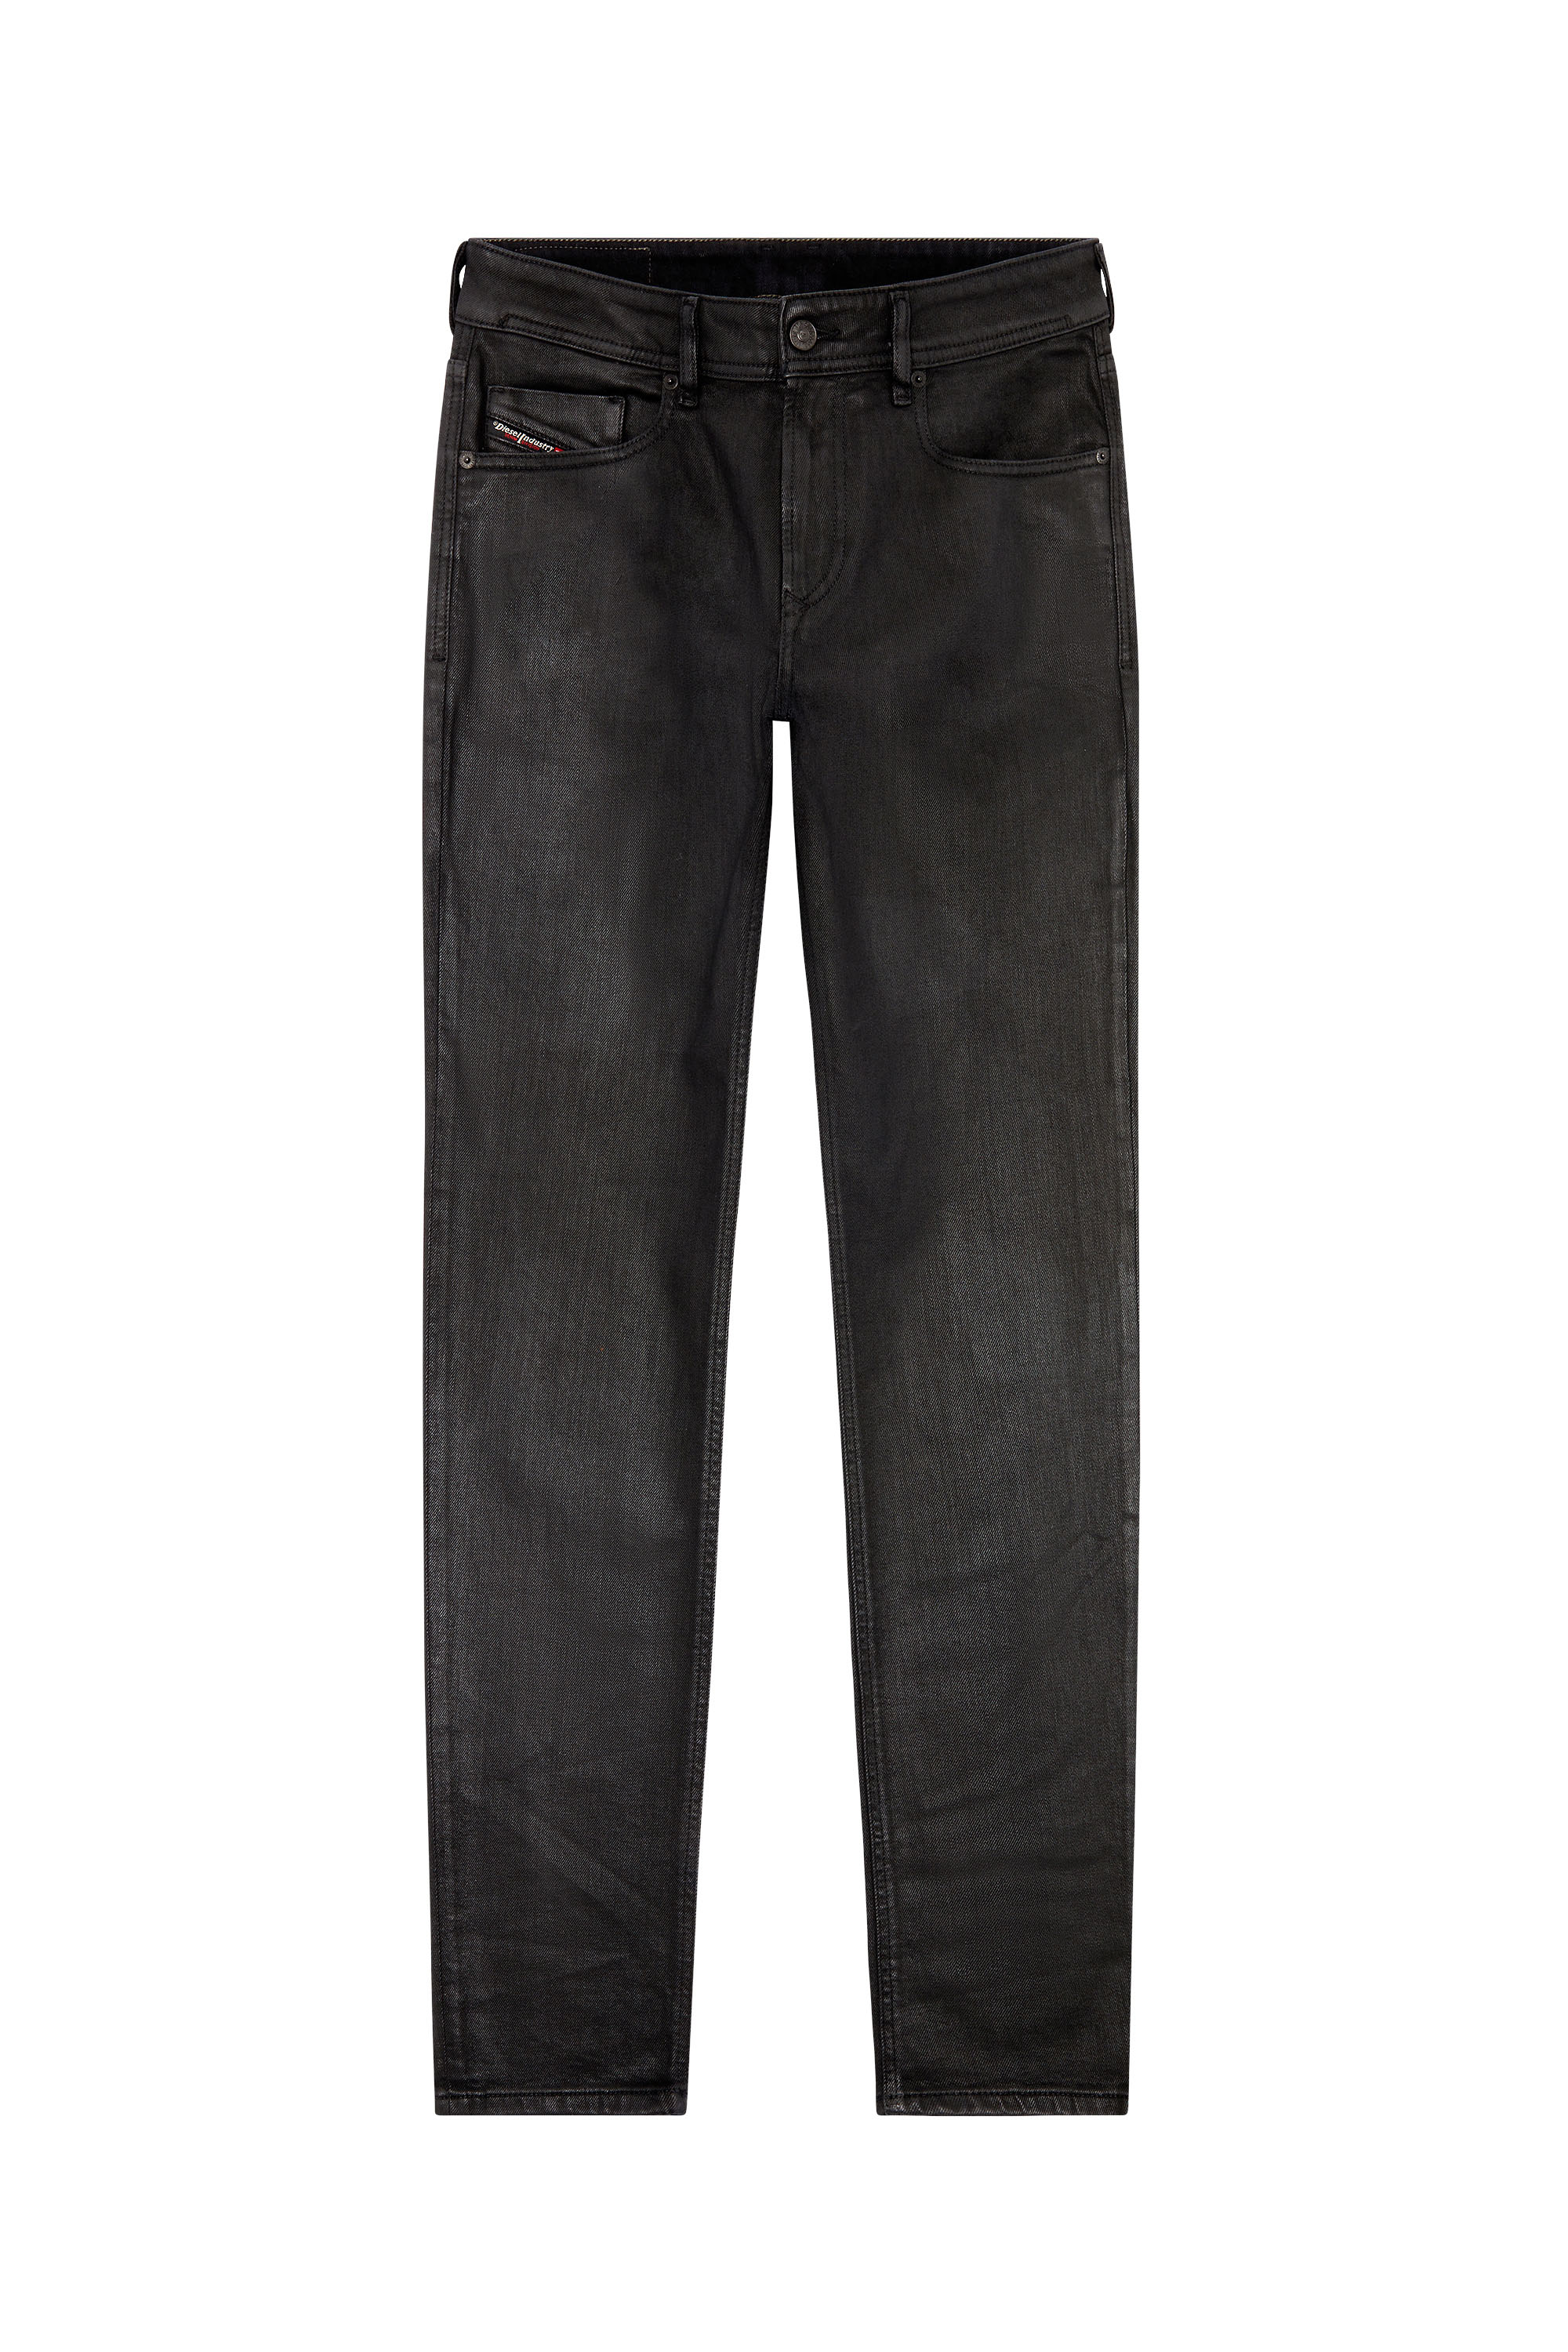 Diesel - Skinny Jeans 1979 Sleenker E09ID, Black/Dark grey - Image 5